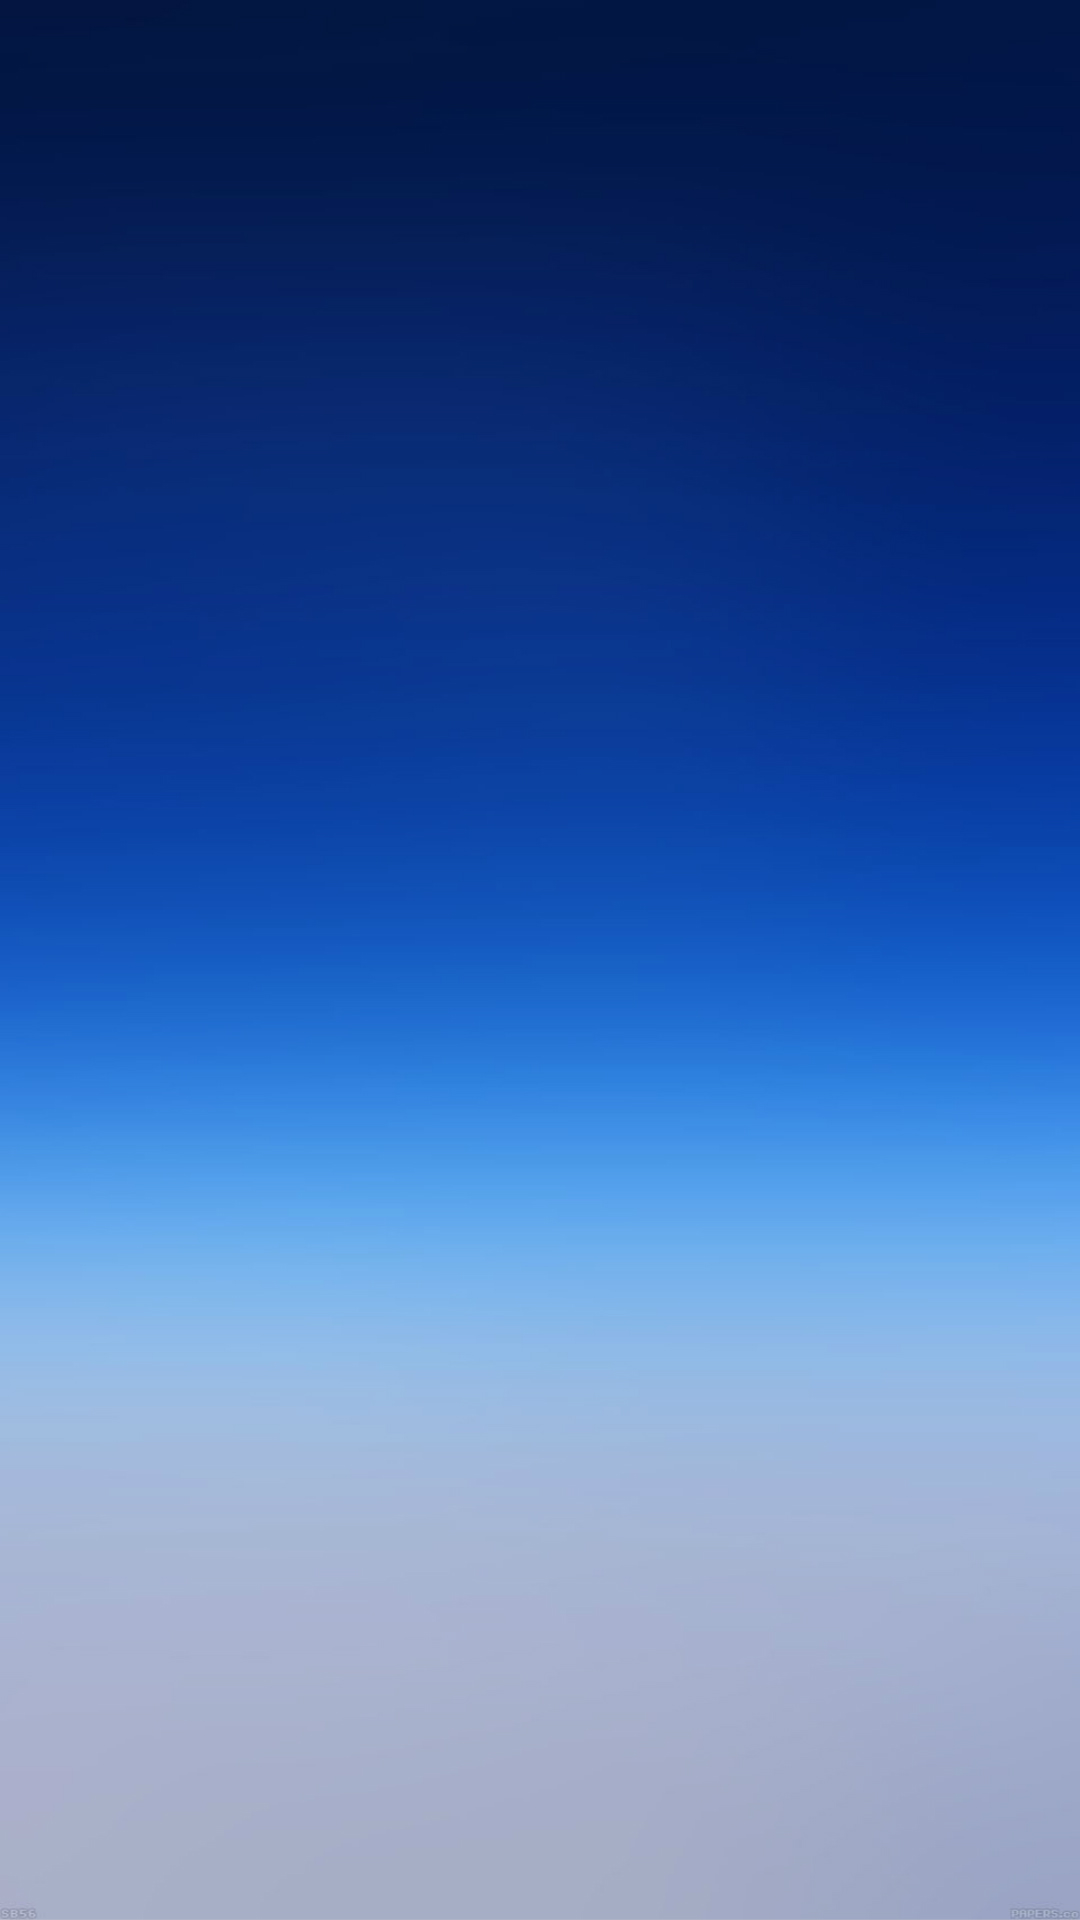 青い壁紙iphone 6,空,青い,昼間,雰囲気,コバルトブルー